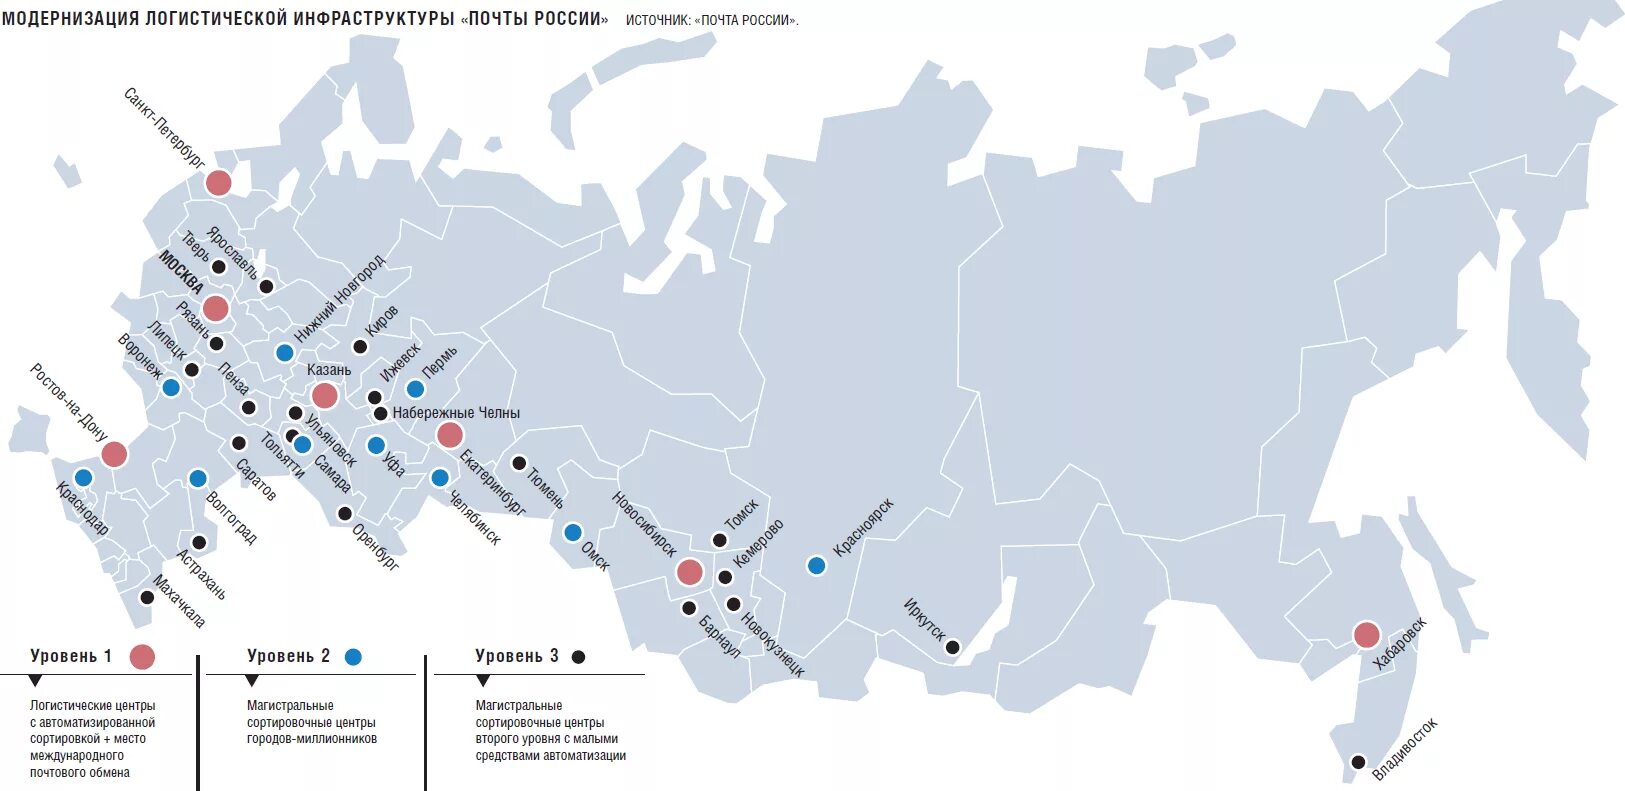 Крупные аэропорты России на карте. 10 Крупных аэропортов в России на карте. Сортировочные центры почты России на карте. Логистическая карта России.